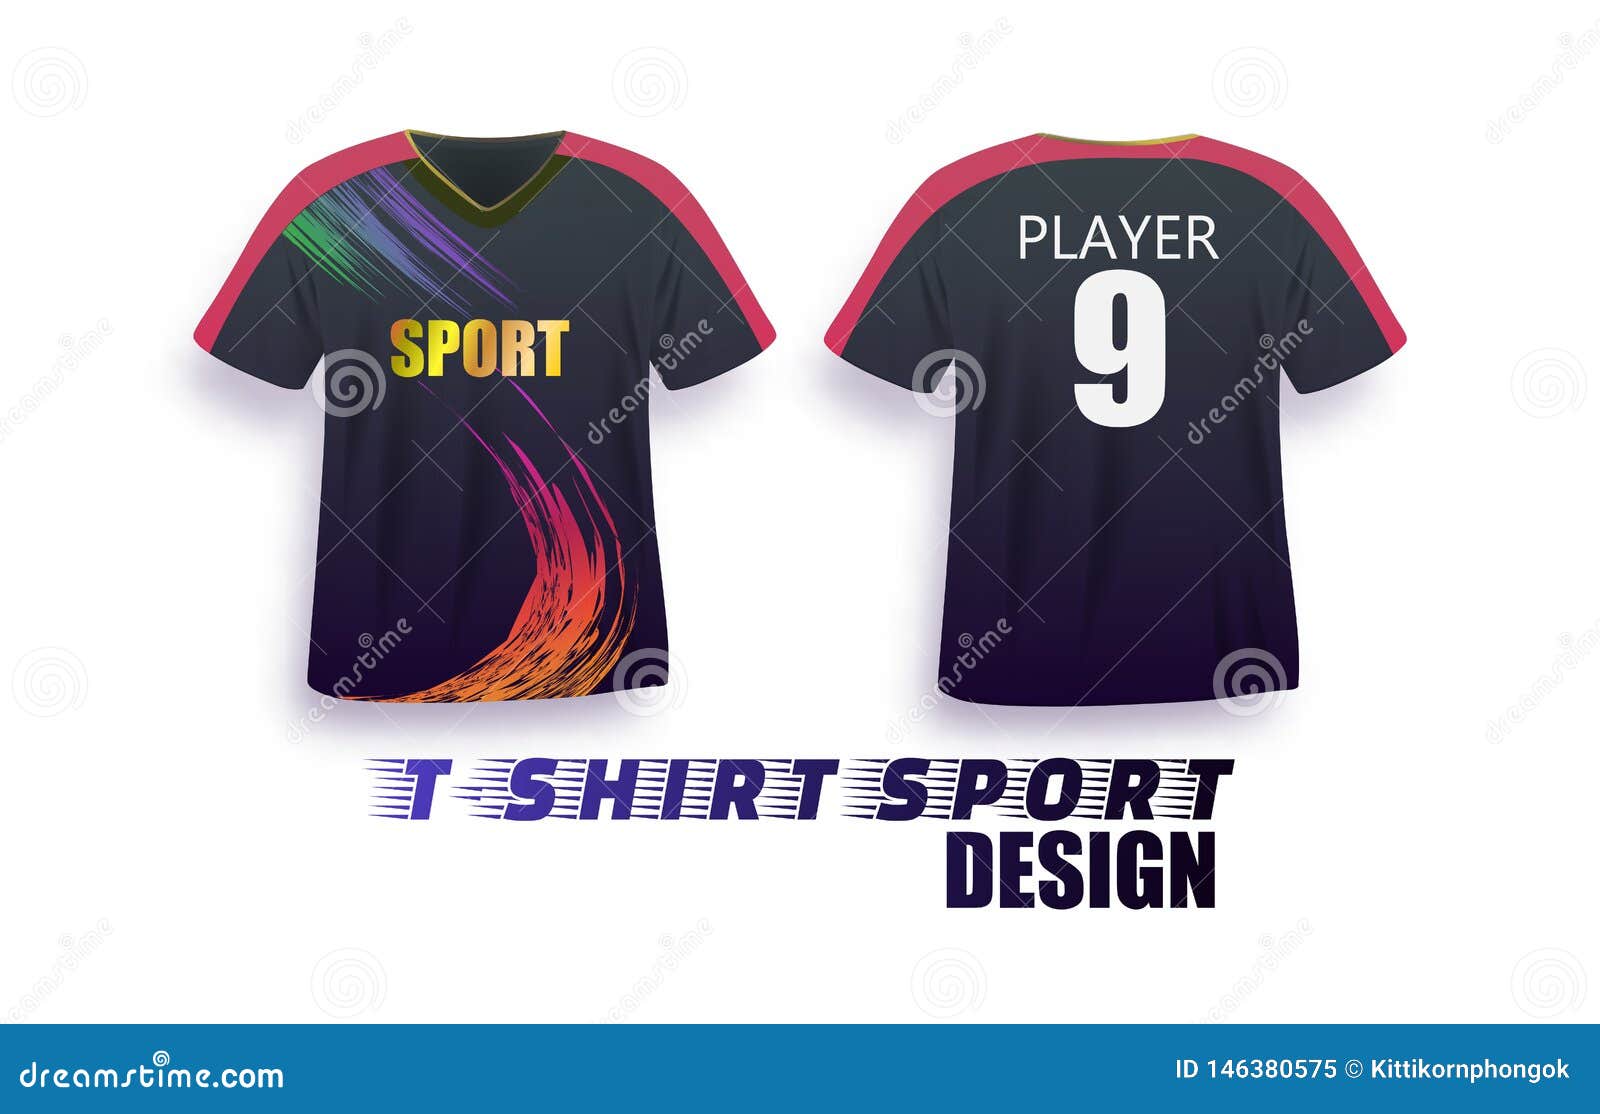 Download T-shirt Sport V-neck Design Template, Soccer Jersey Mockup ...